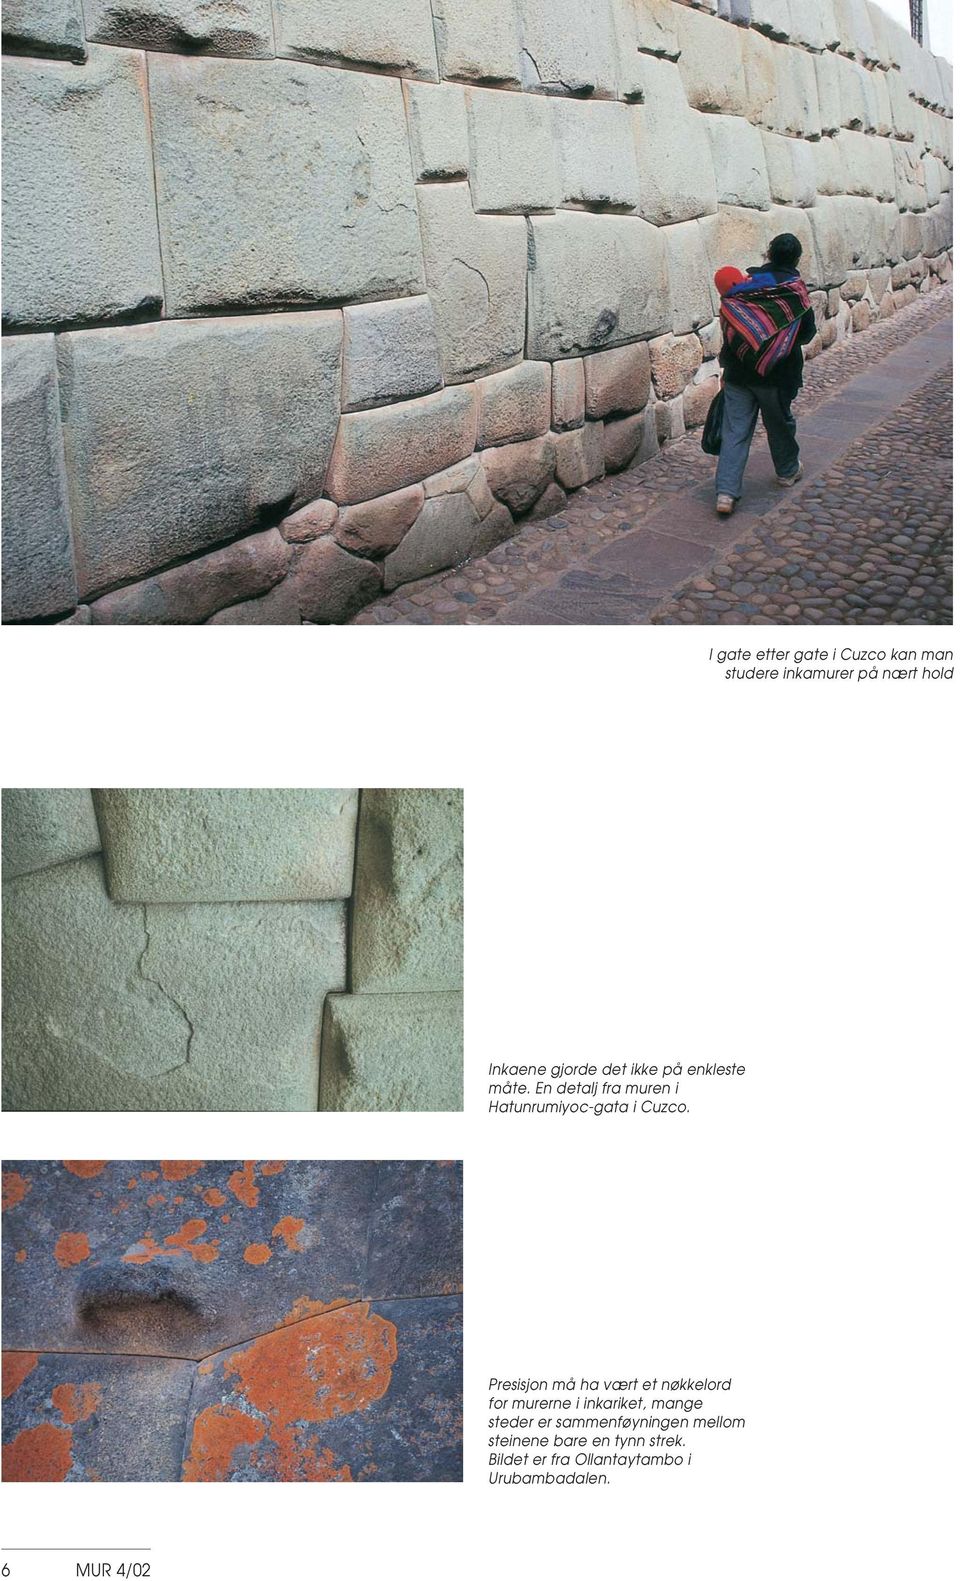 Presisjon må ha vært et nøkkelord for murerne i inkariket, mange steder er